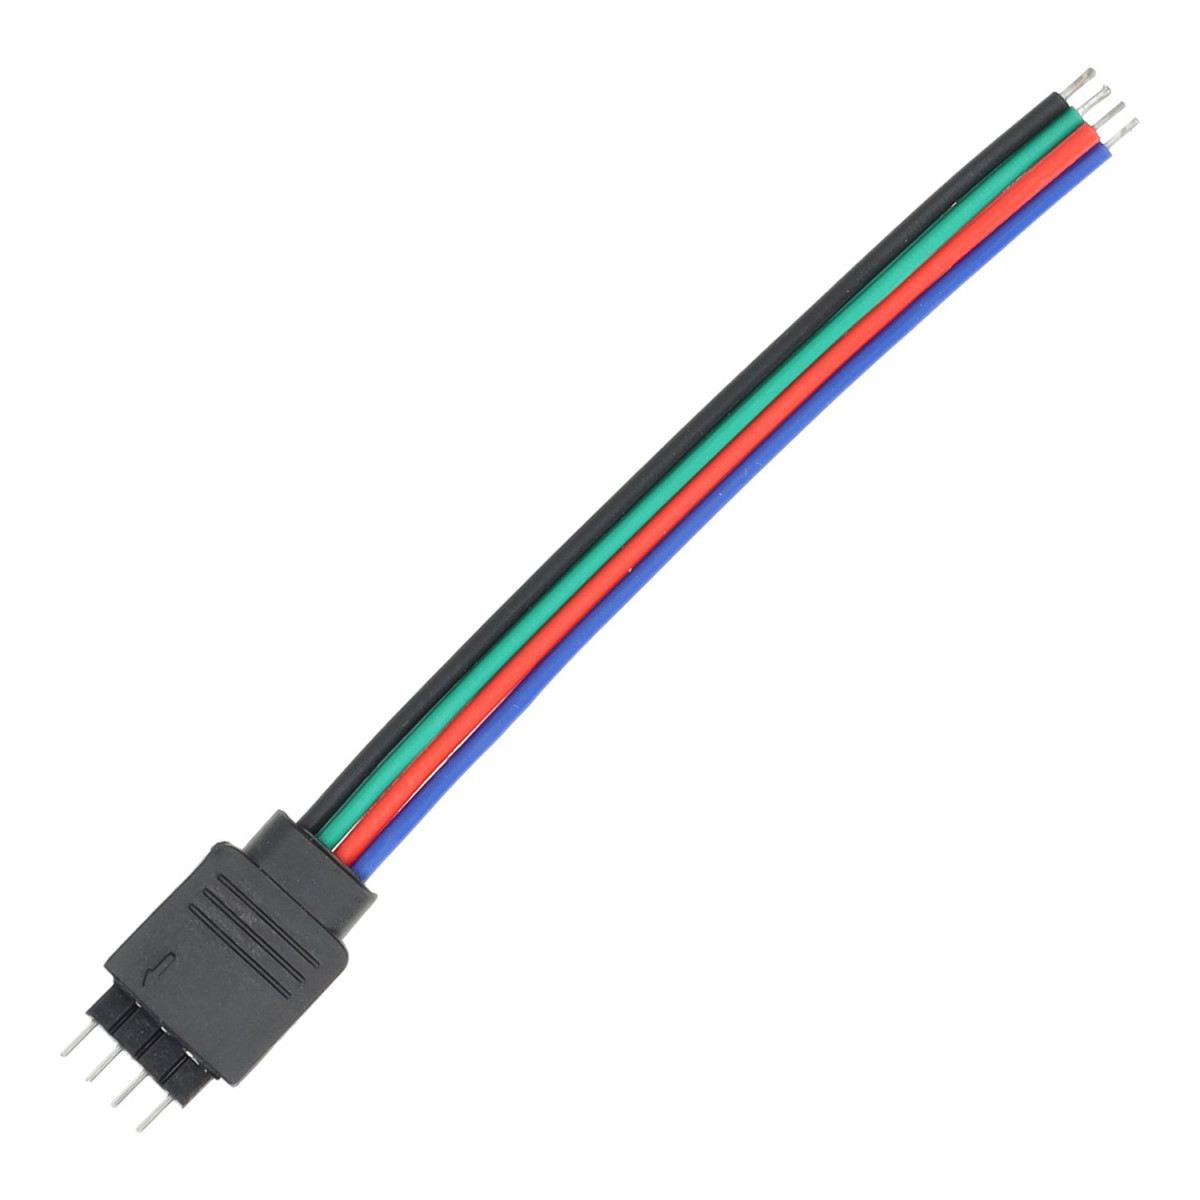 Anschlusskabel RGB LED Streifen 10mm (4 Pin) zum besten Preis